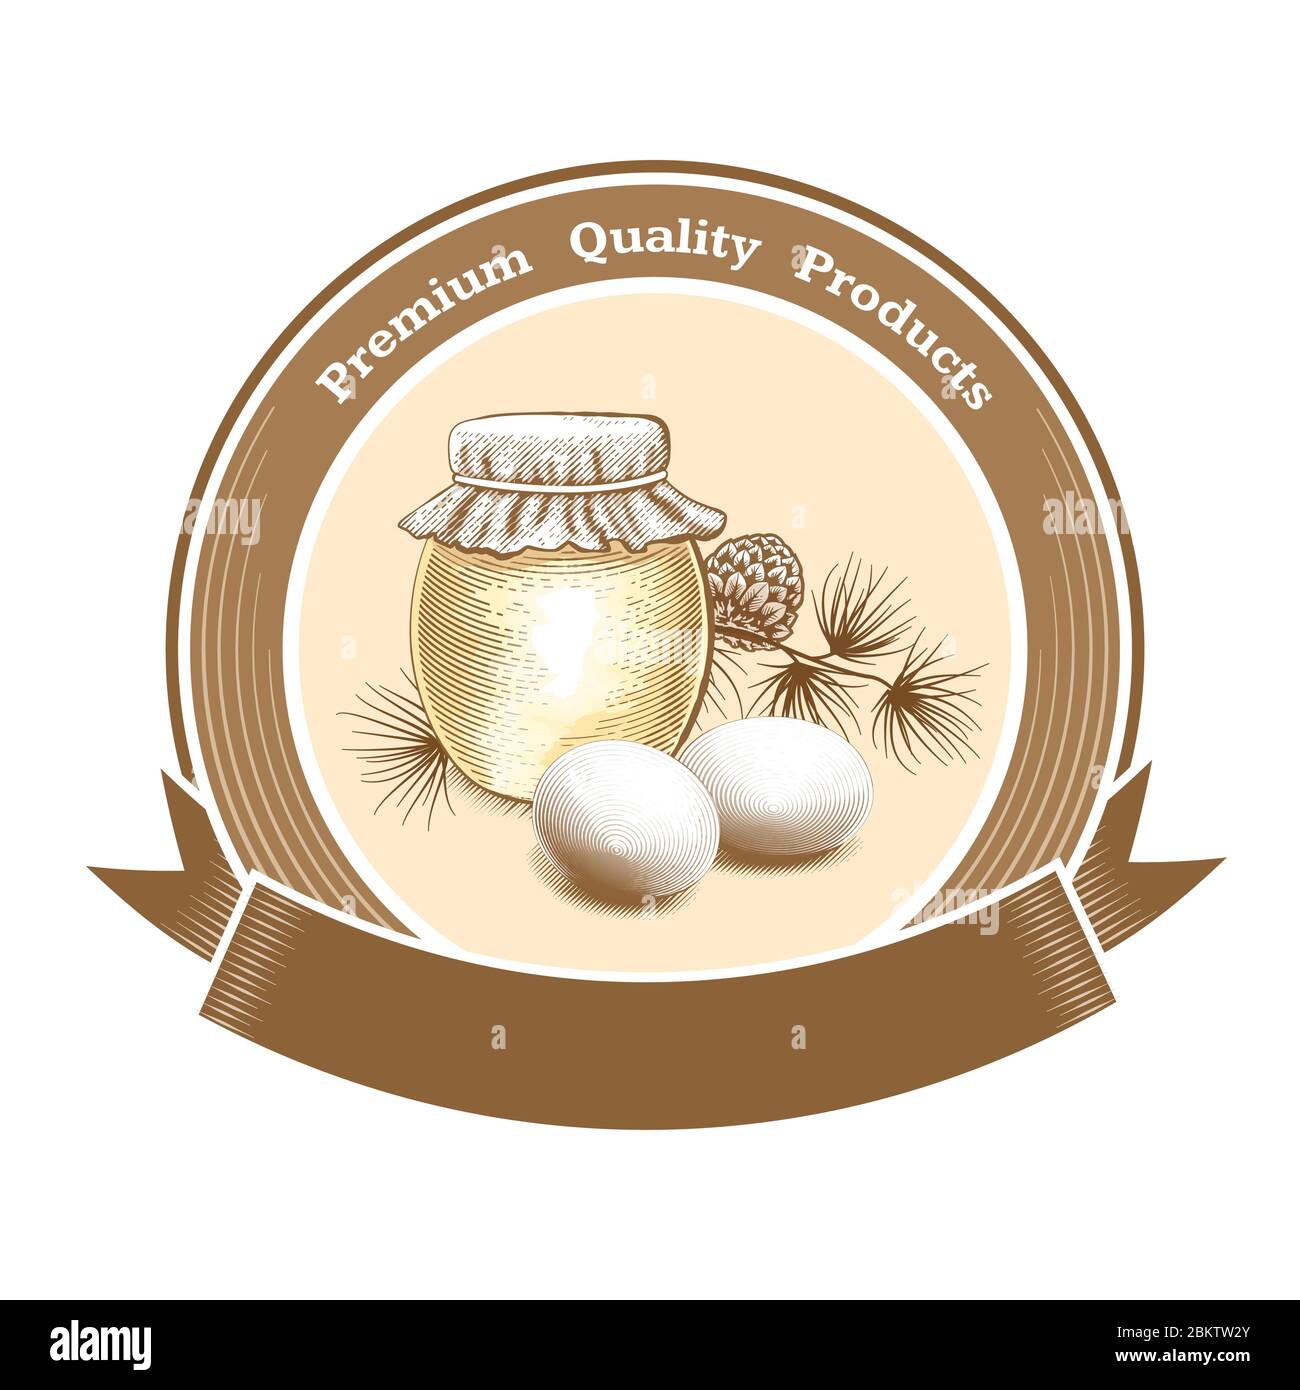 Vector Vinage rundes Etikett für den Hof oder Lebensmittelgeschäft mit Eiern, Honigglas und Text Premium Quality Products. Platz für Text. Stock Vektor